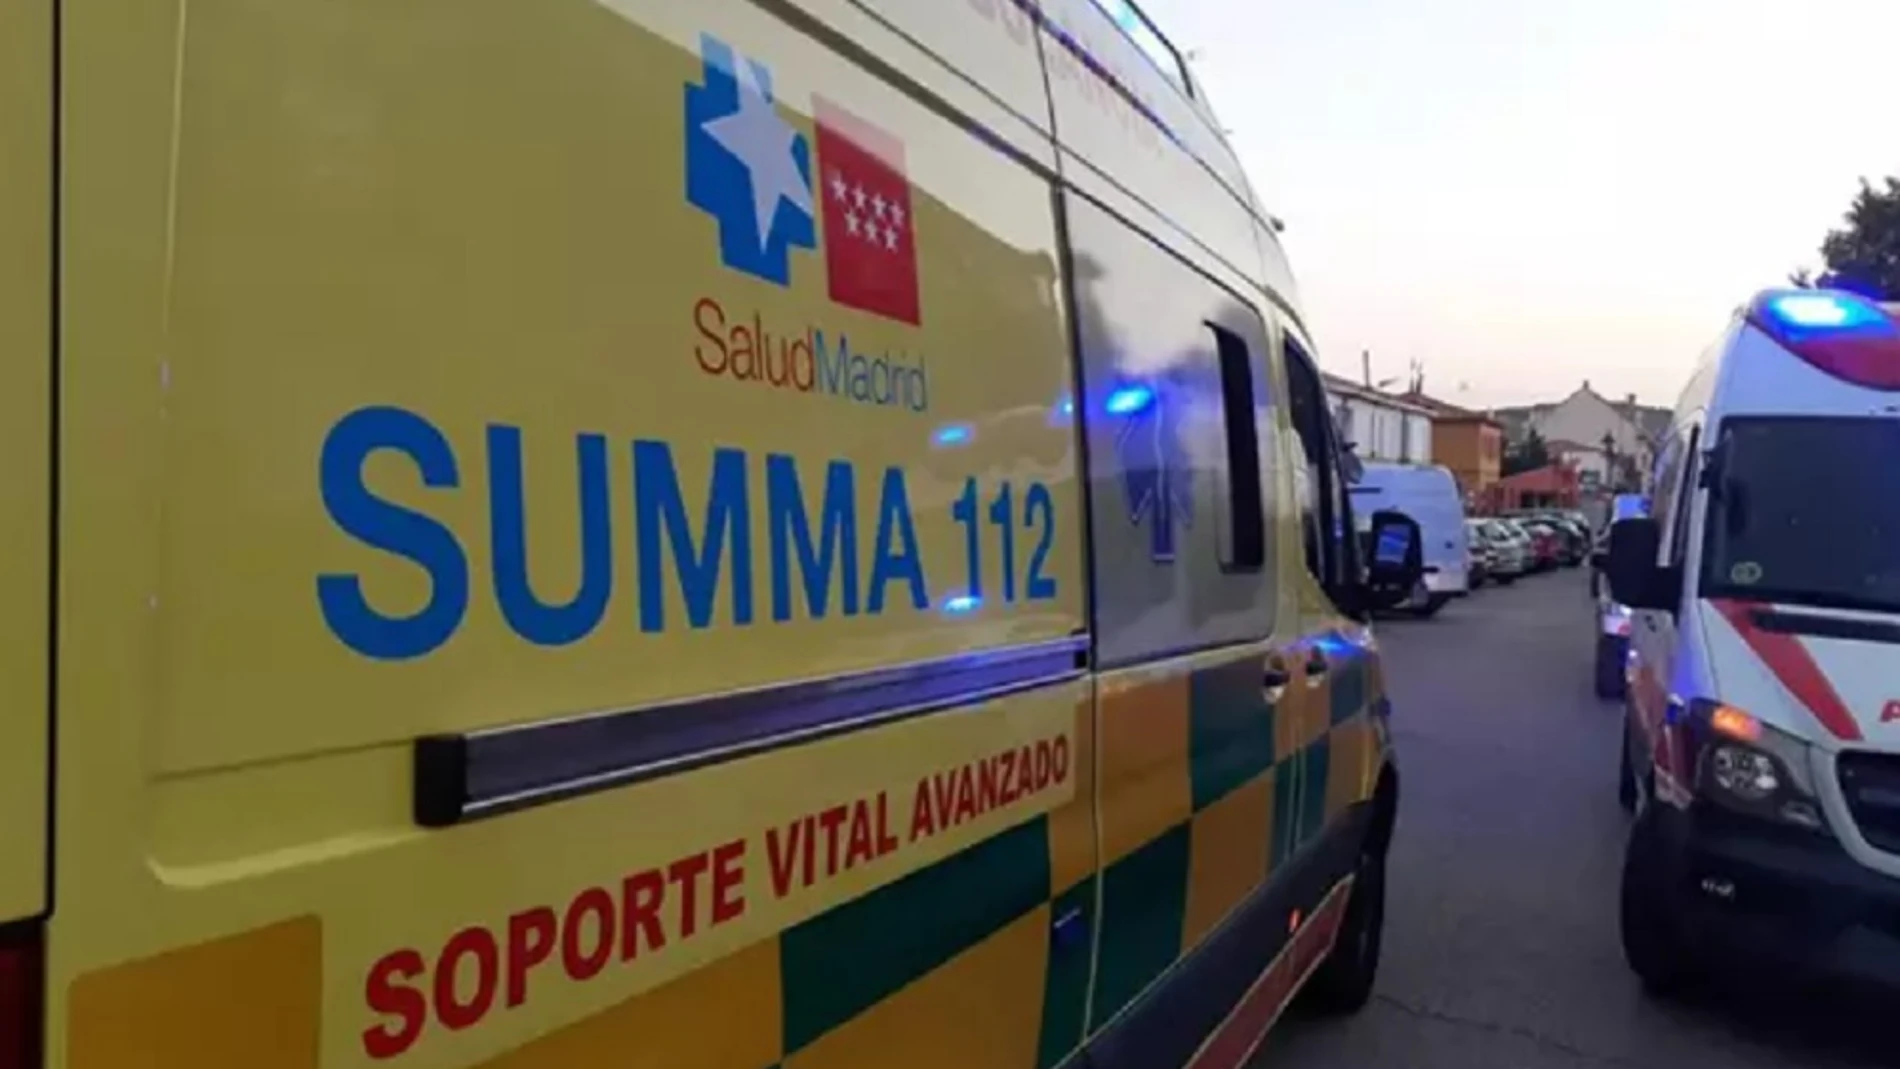 Imagen de una ambulancia del SUMMA 112